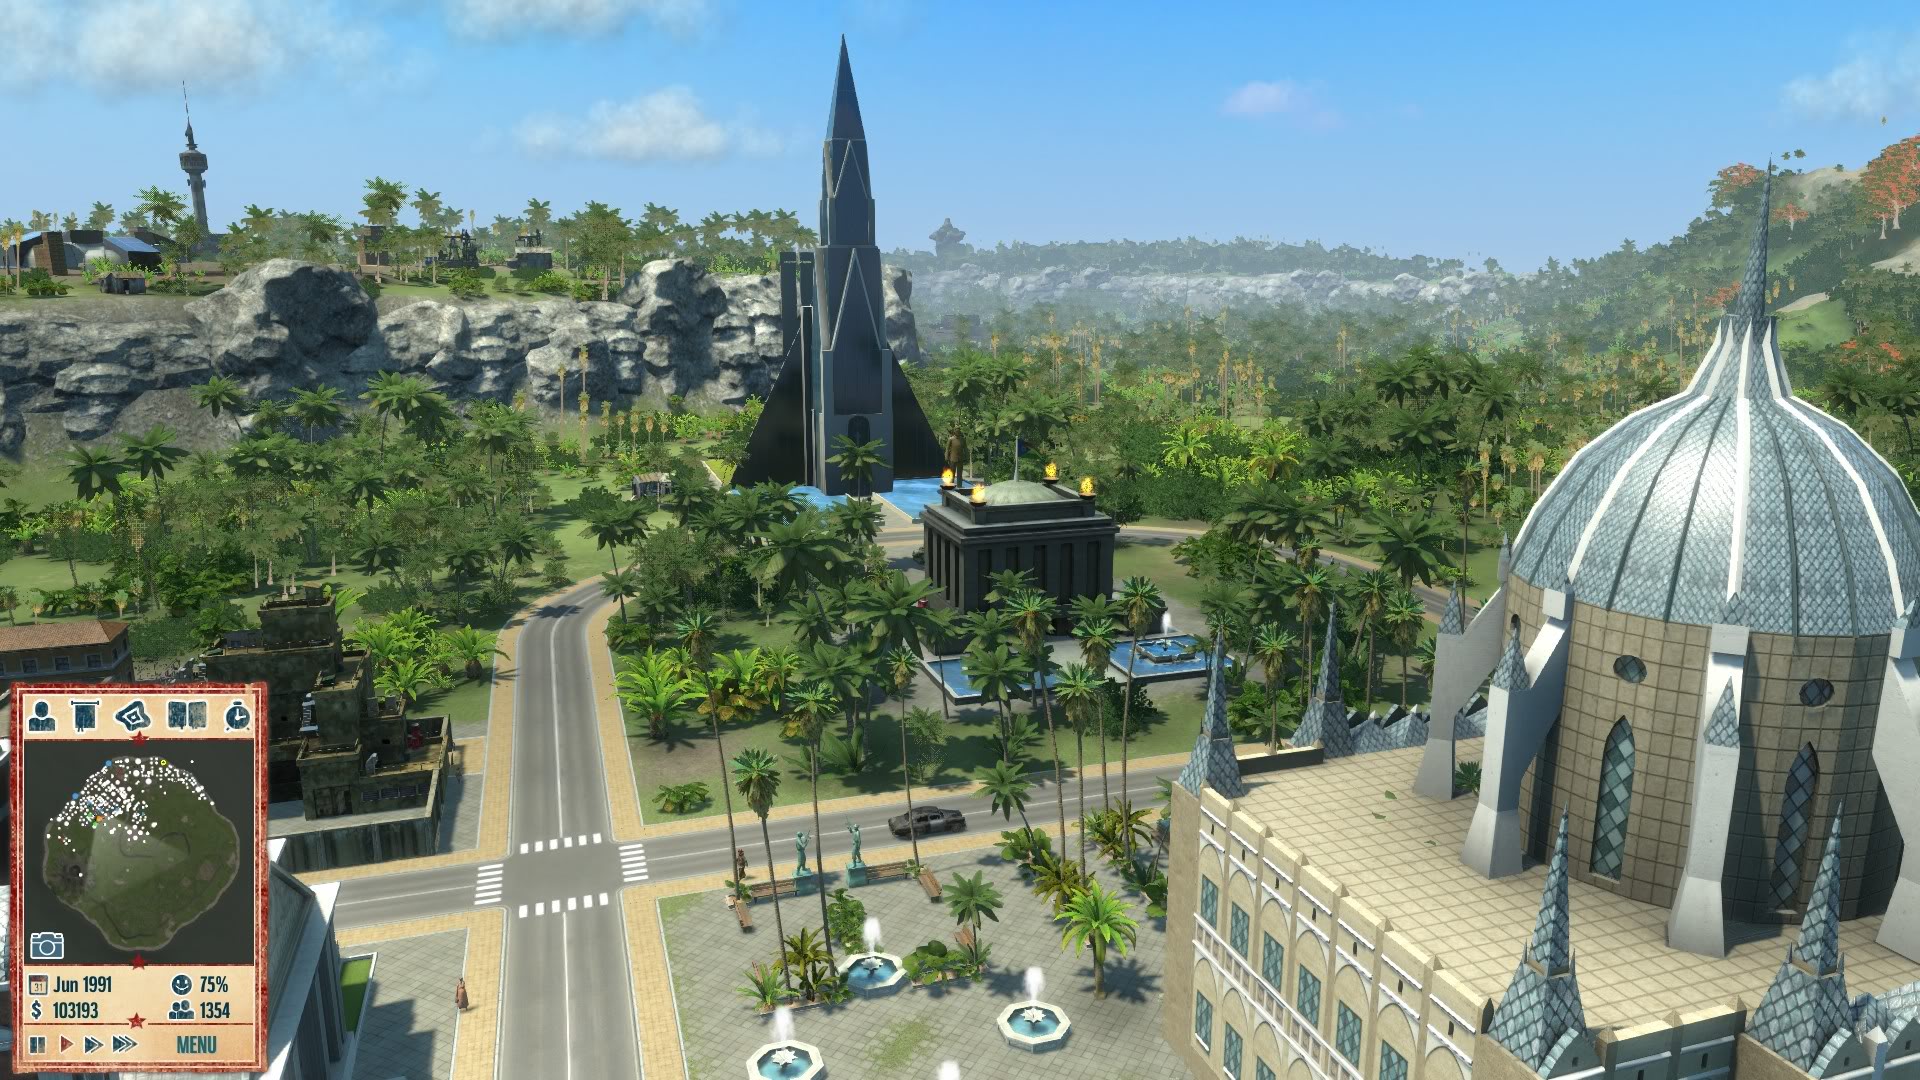 Télécharger des fonds d'écran Tropico 4 HD